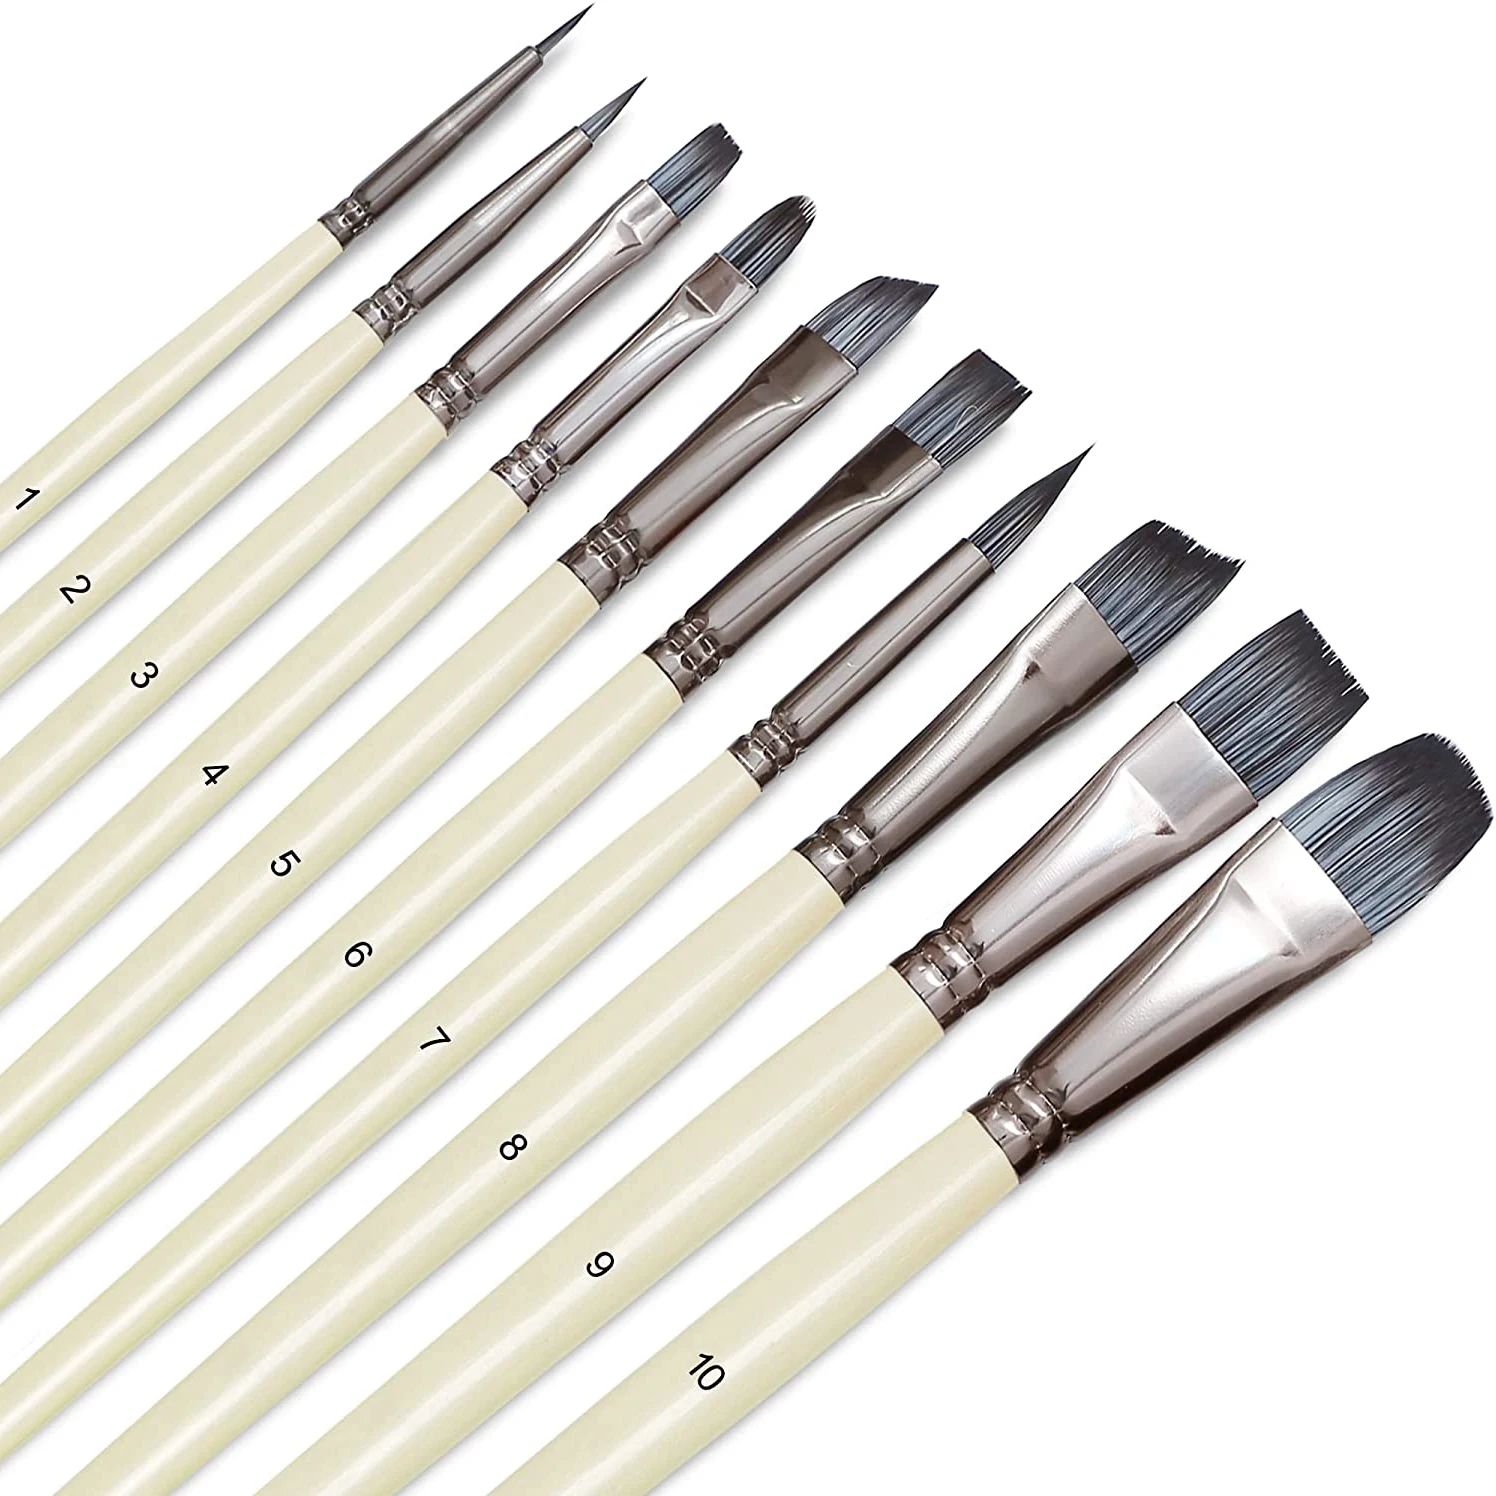 

Artist Paint Brushes Set 10pcs for Acrylic Gouache Paint , Kits with Anti-Shedding Synthetic Nylon Tips Paintbrushes